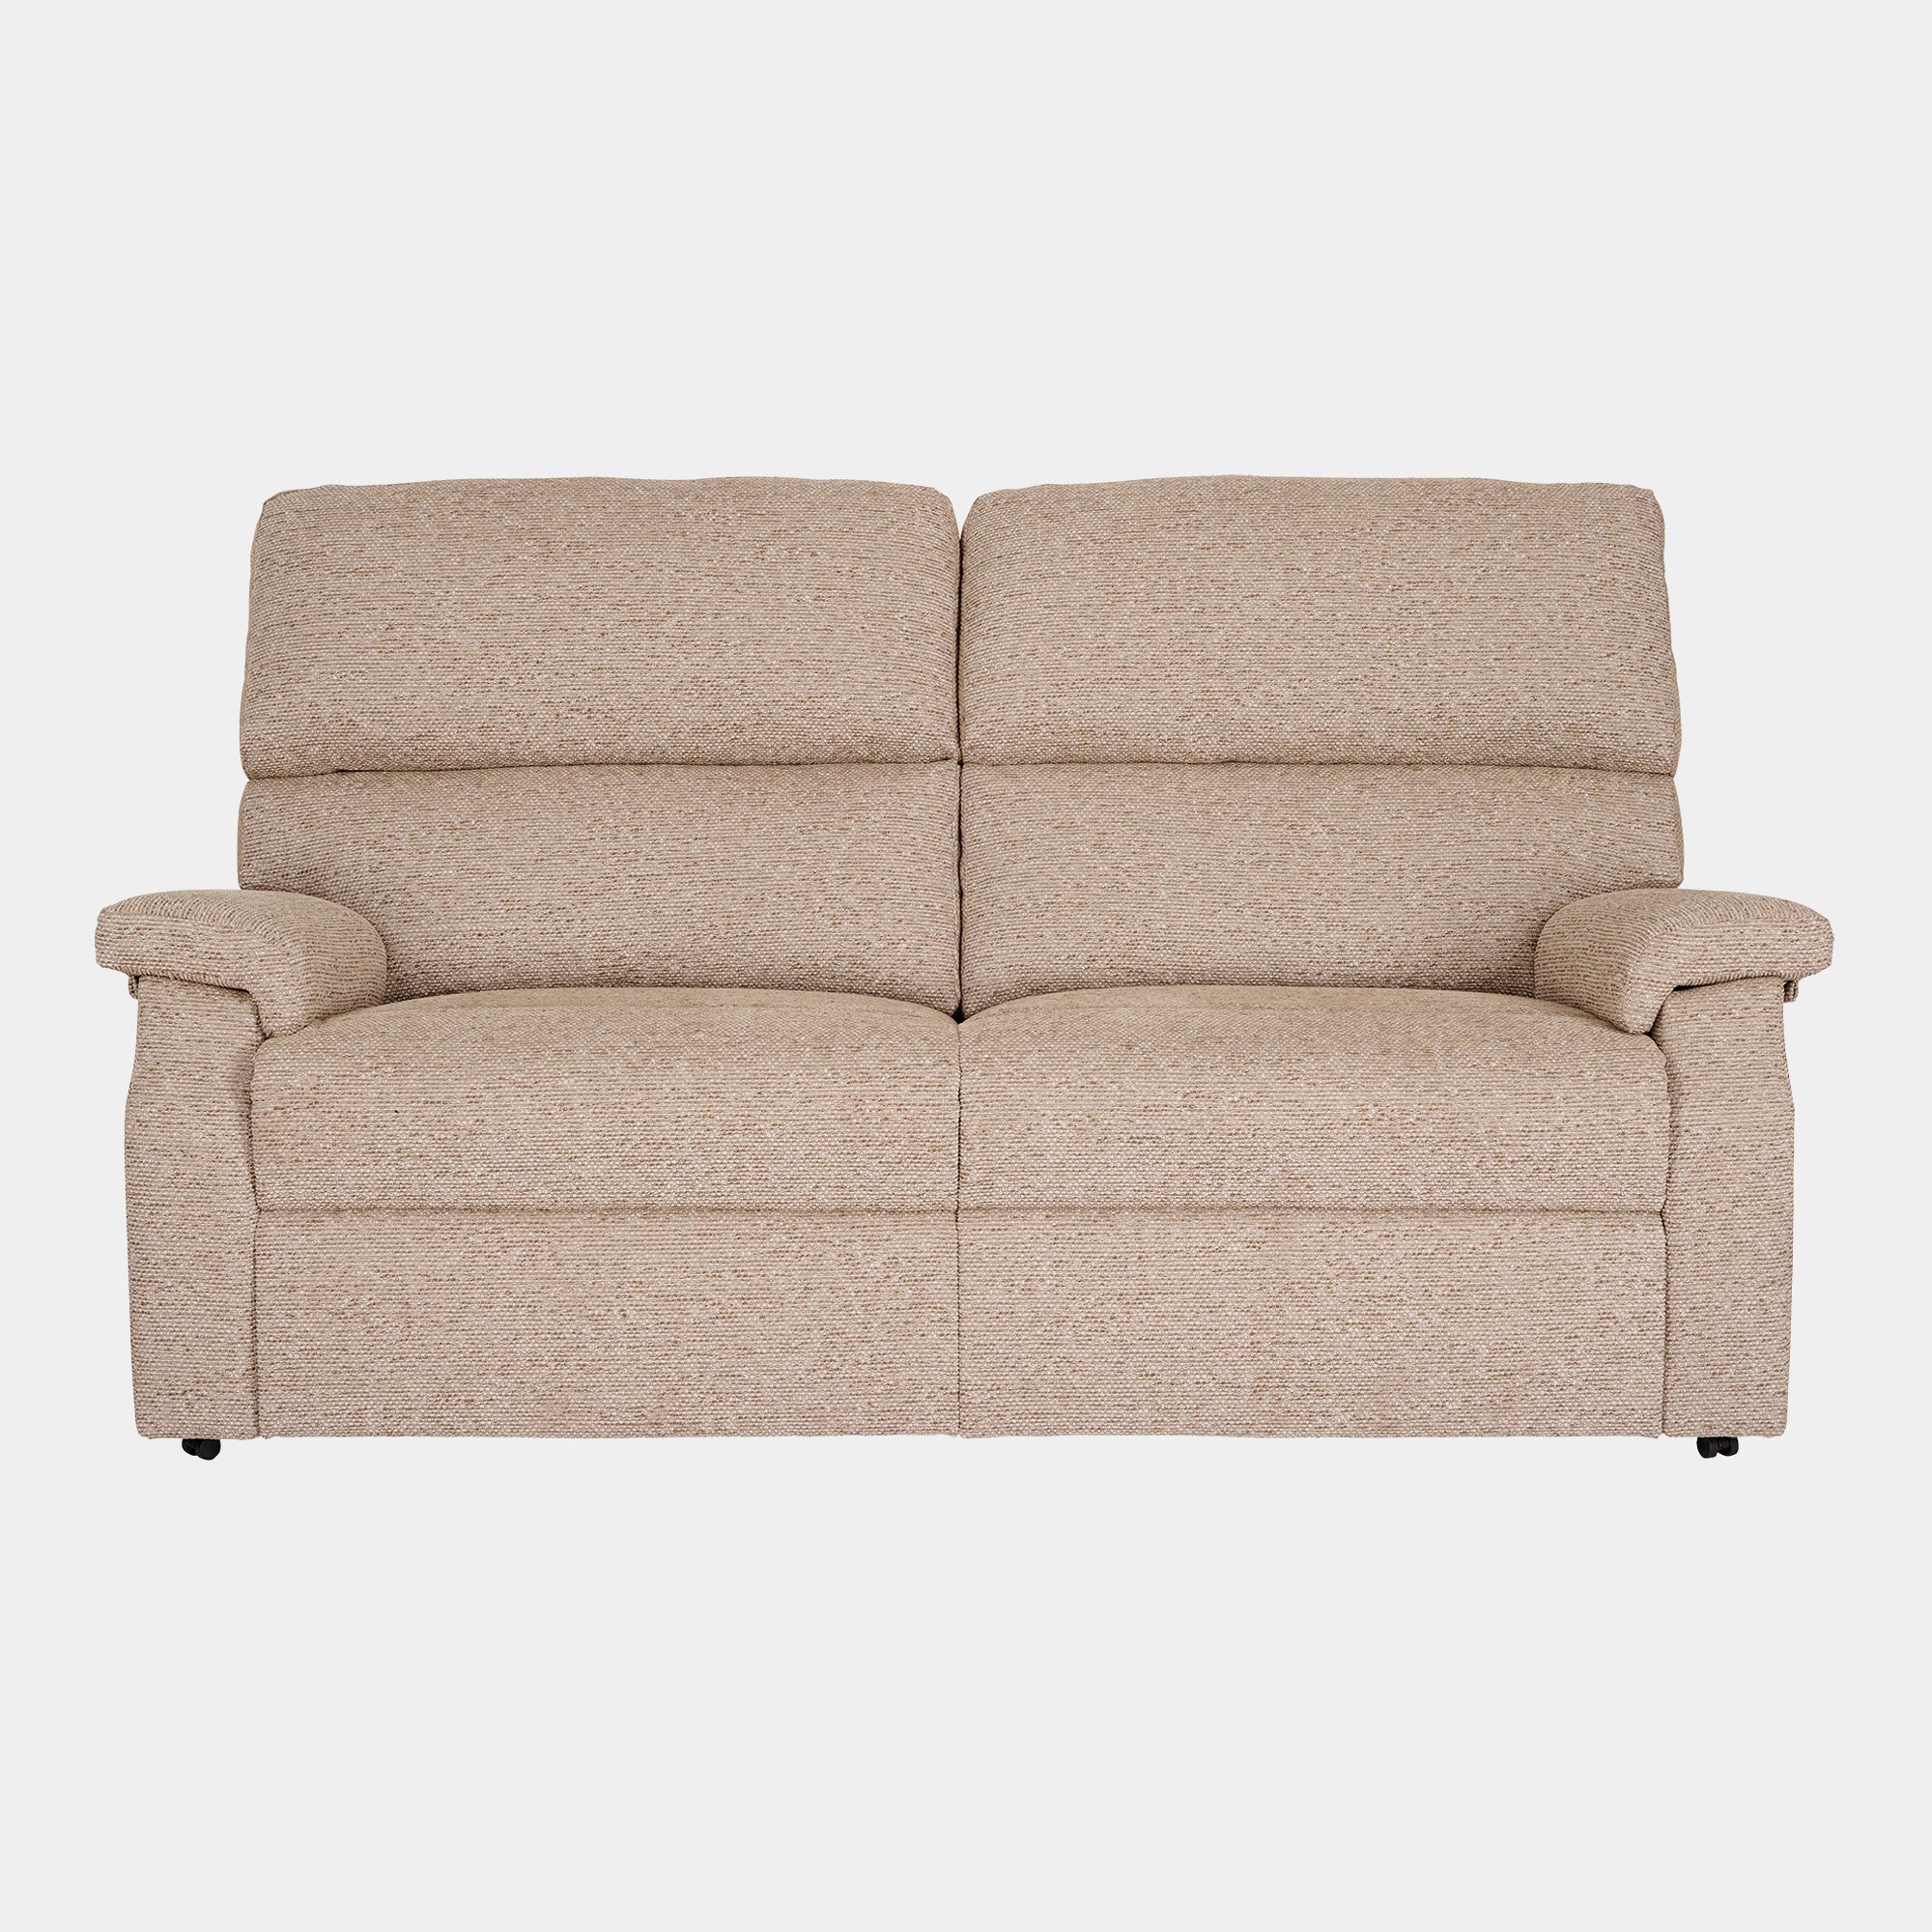 Bourton - Fixed 3 Seat Sofa In Fabric